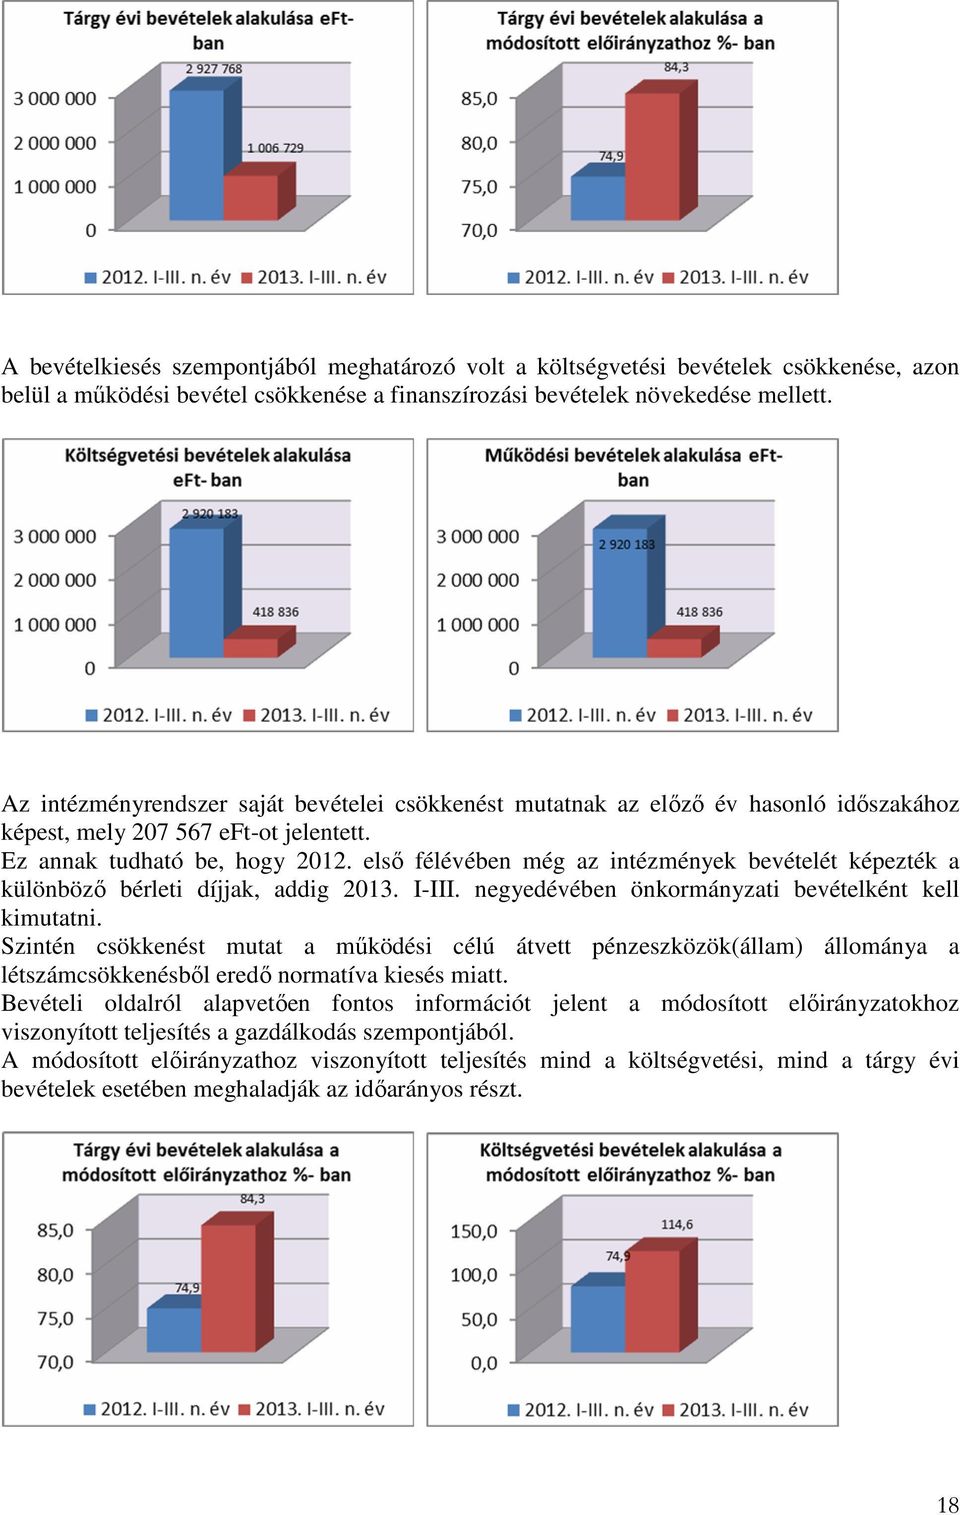 elsı félévében még az intézmények bevételét képezték a különbözı bérleti díjjak, addig 2013. I-III. negyedévében önkormányzati bevételként kell kimutatni.